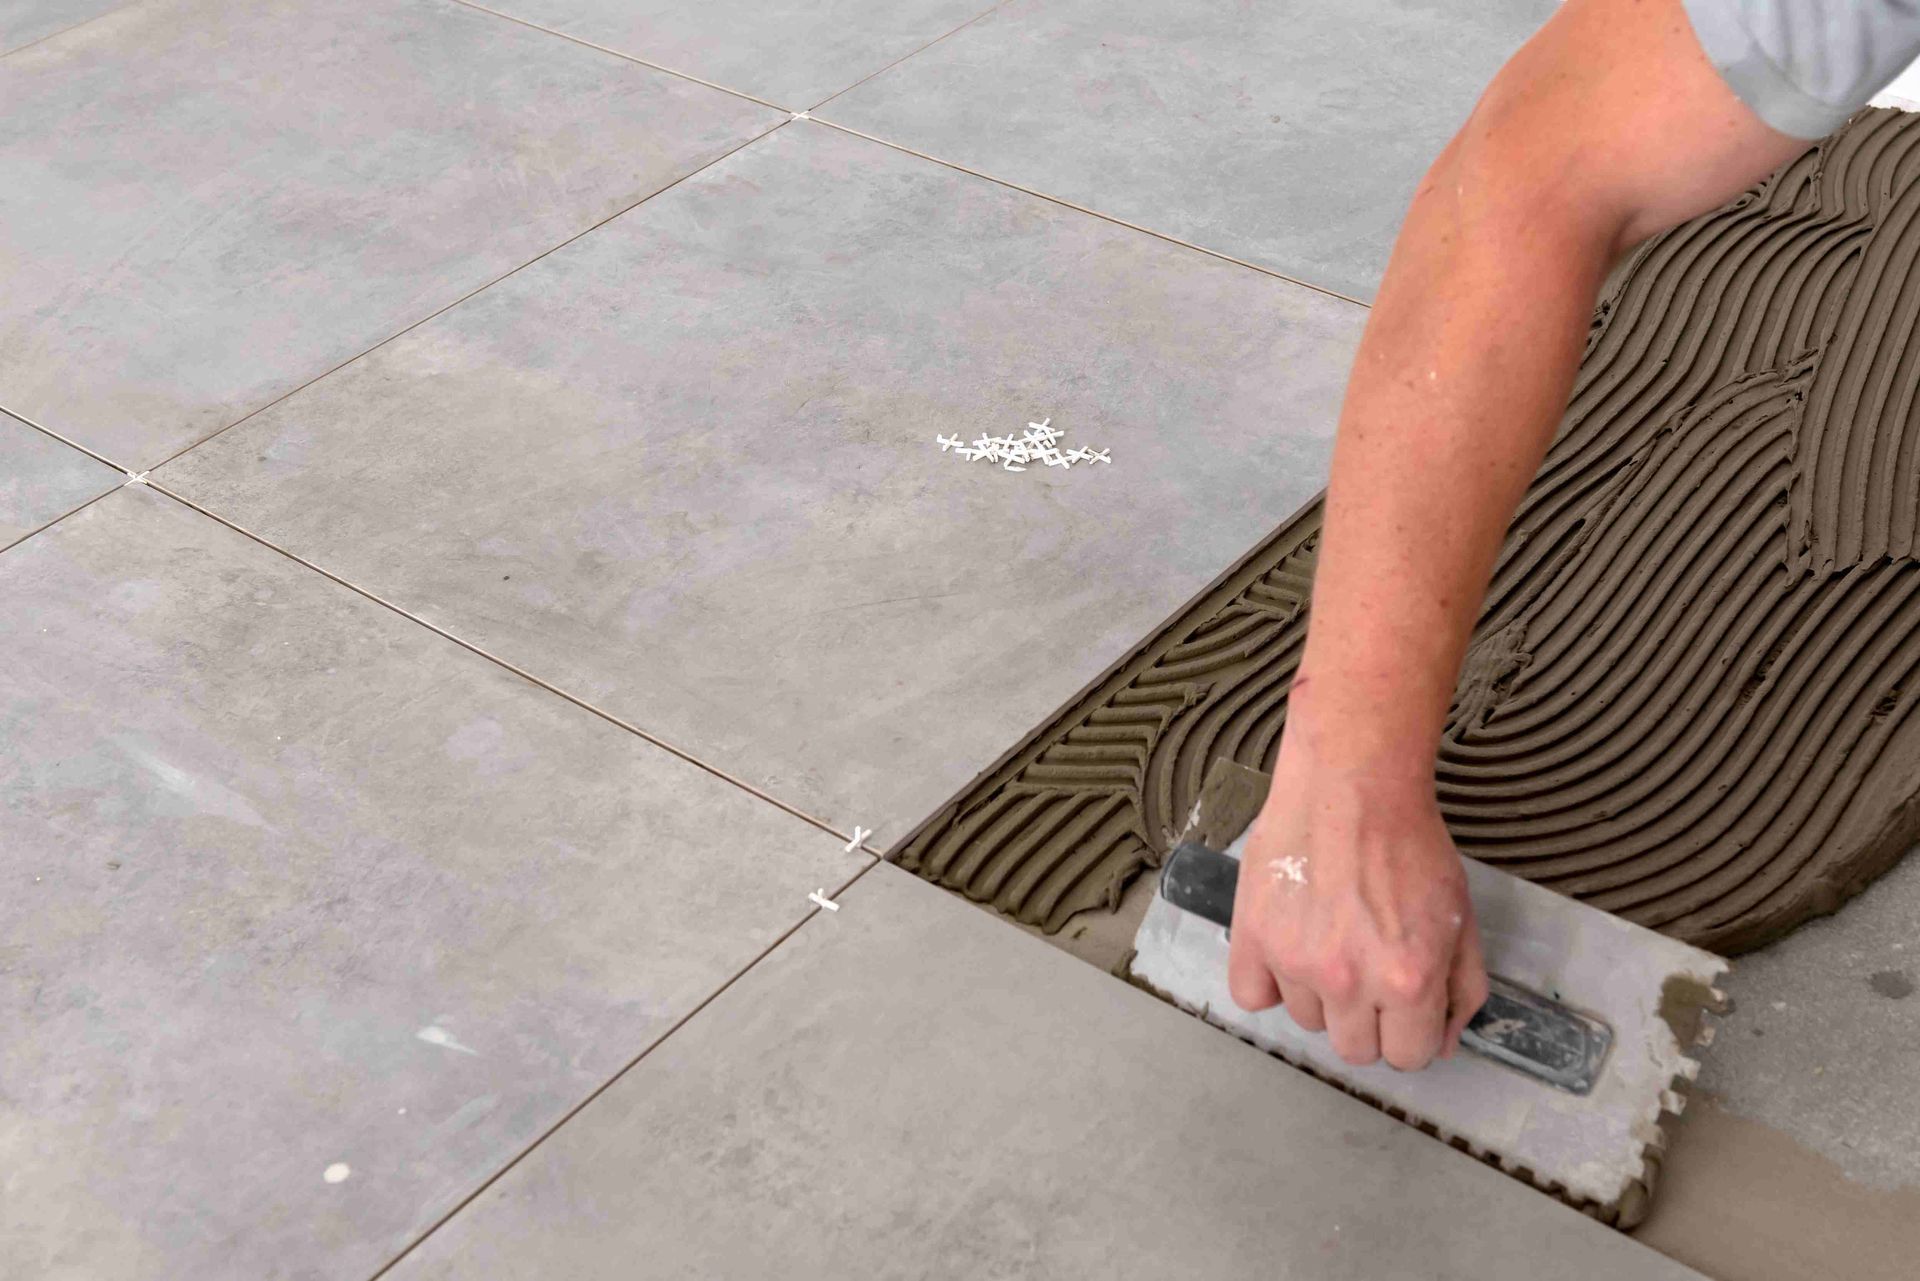 A man installing tile on a bathroom floor